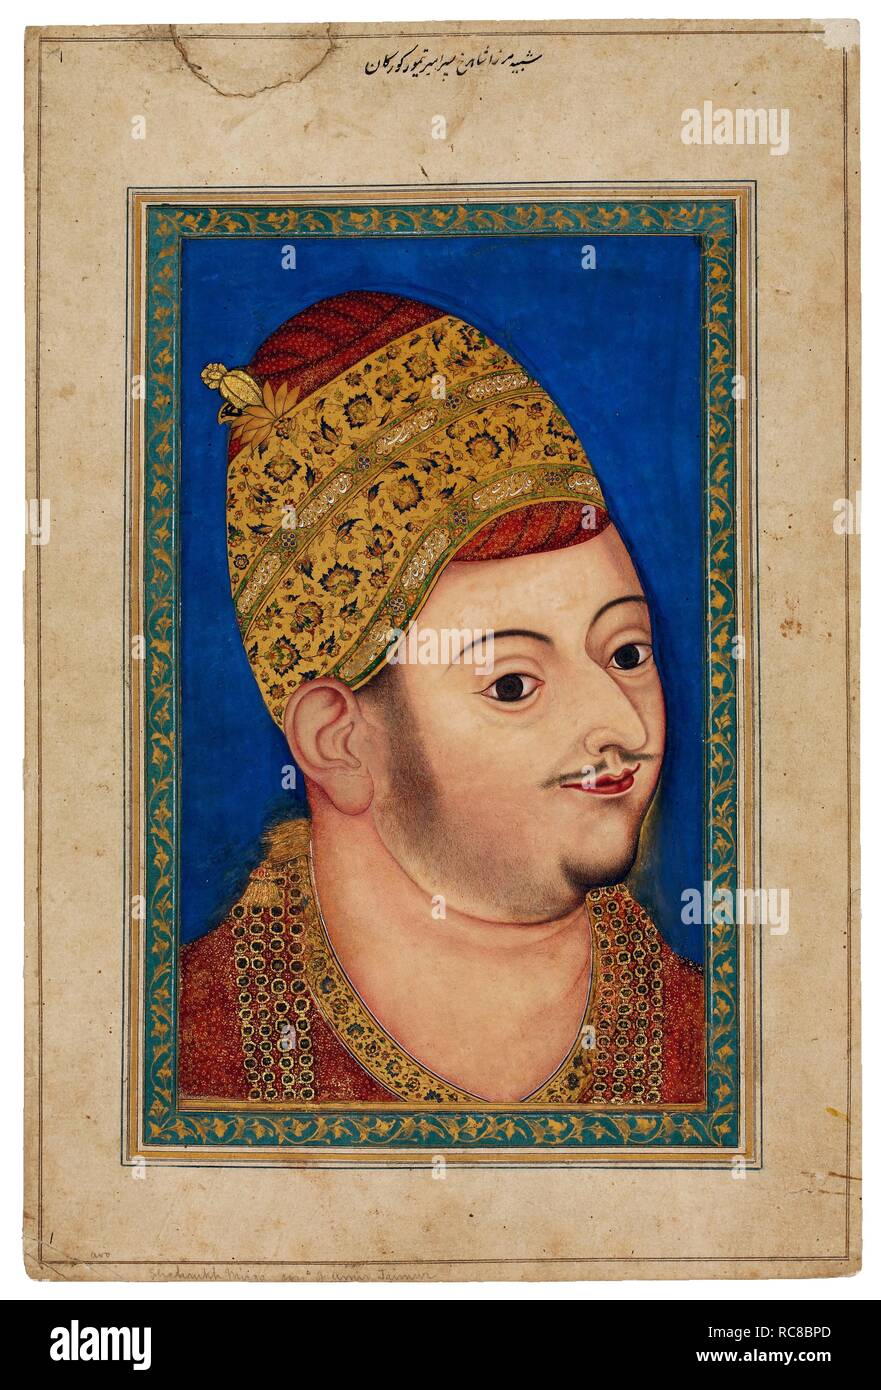 Portrait von Ibrahim Adil Shah II (1556-1627), Sultan von Bijapur. Museum: Der David Sammlung. Autor: anonym. Stockfoto